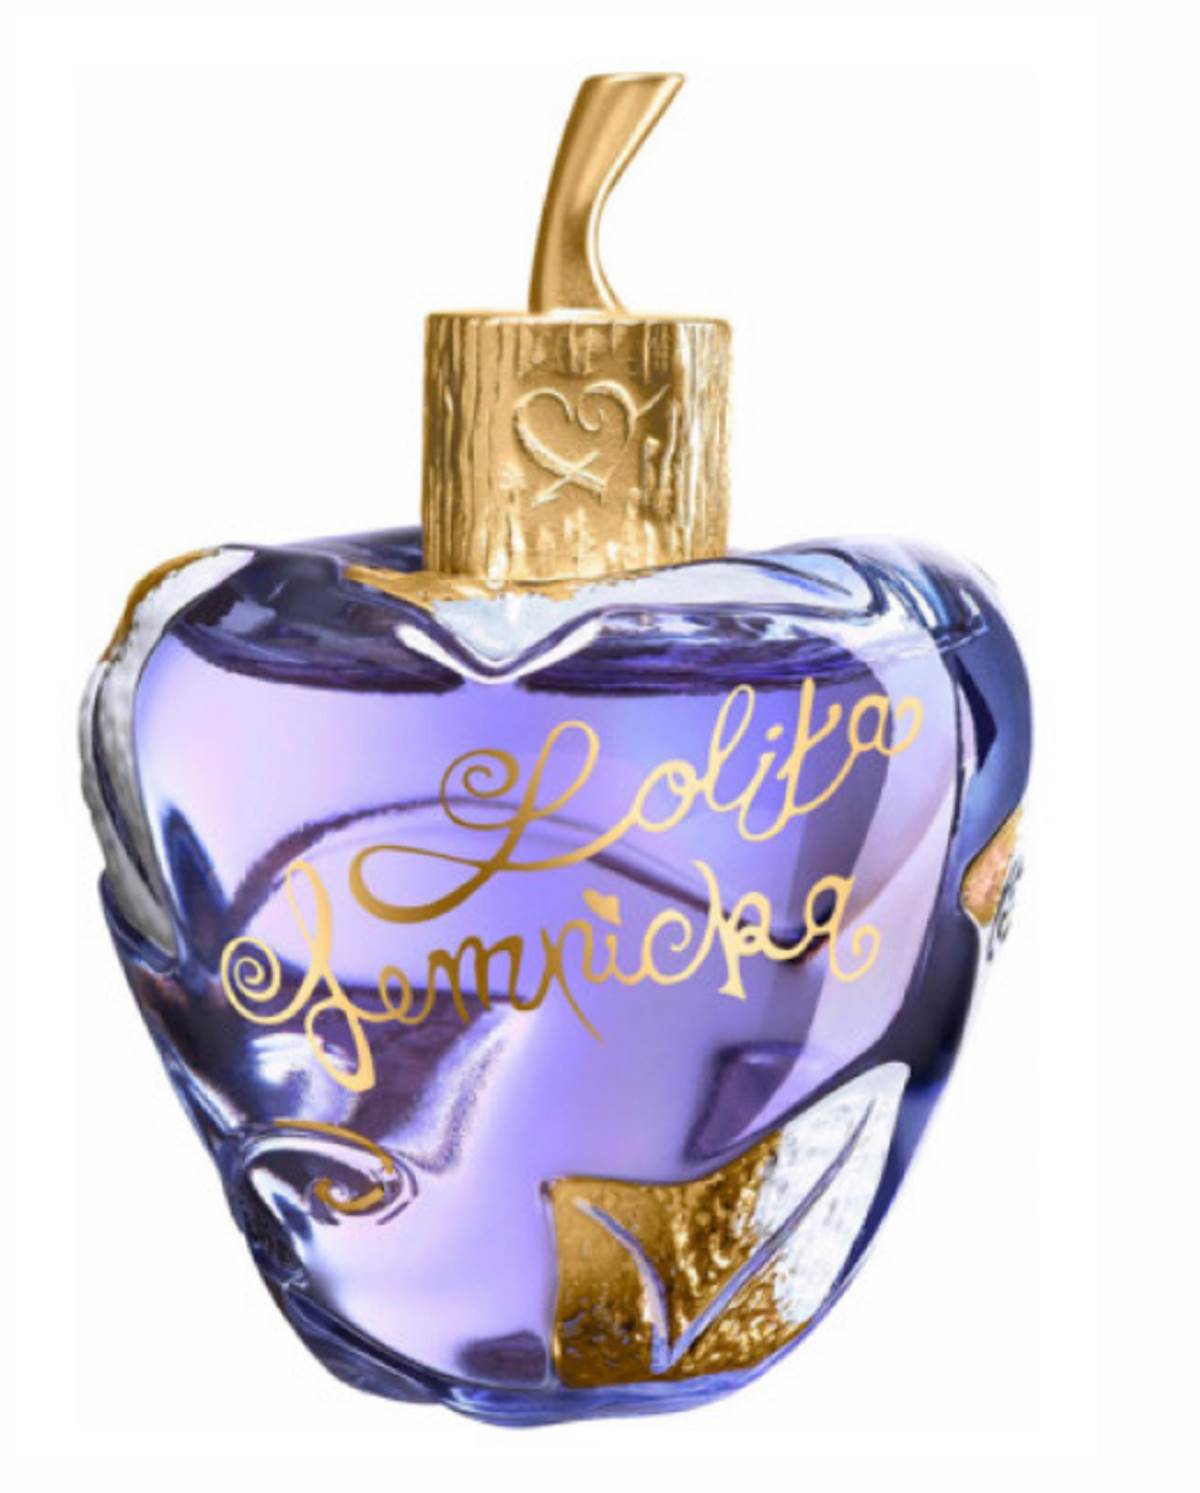  Zorannah često koristi slatkaste parfeme u kojima preovladava nota vanile: Lolita - Lempicka. 